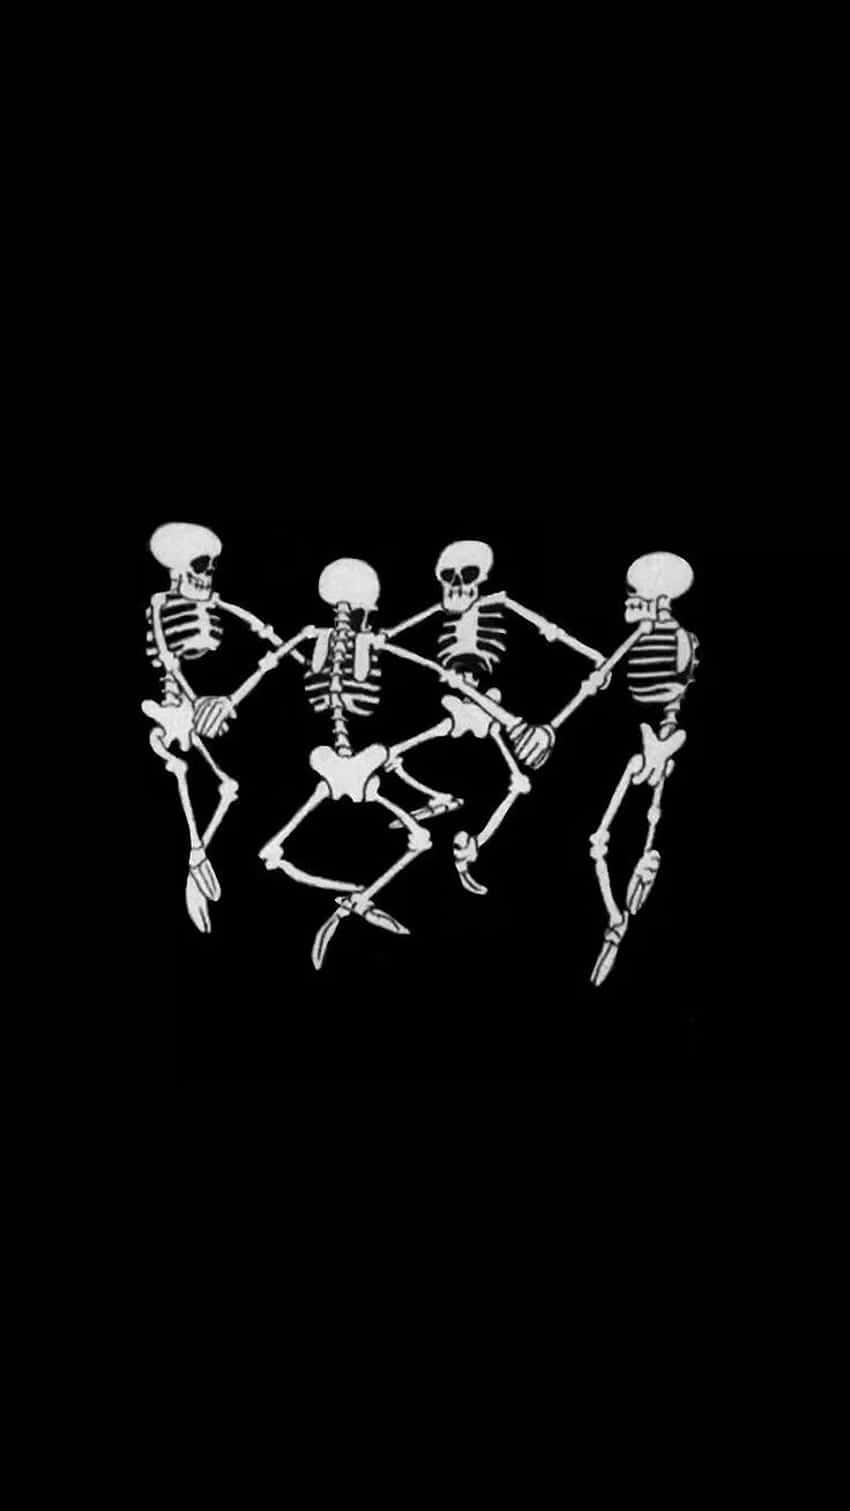 Dancing Skeletons Black Background Wallpaper